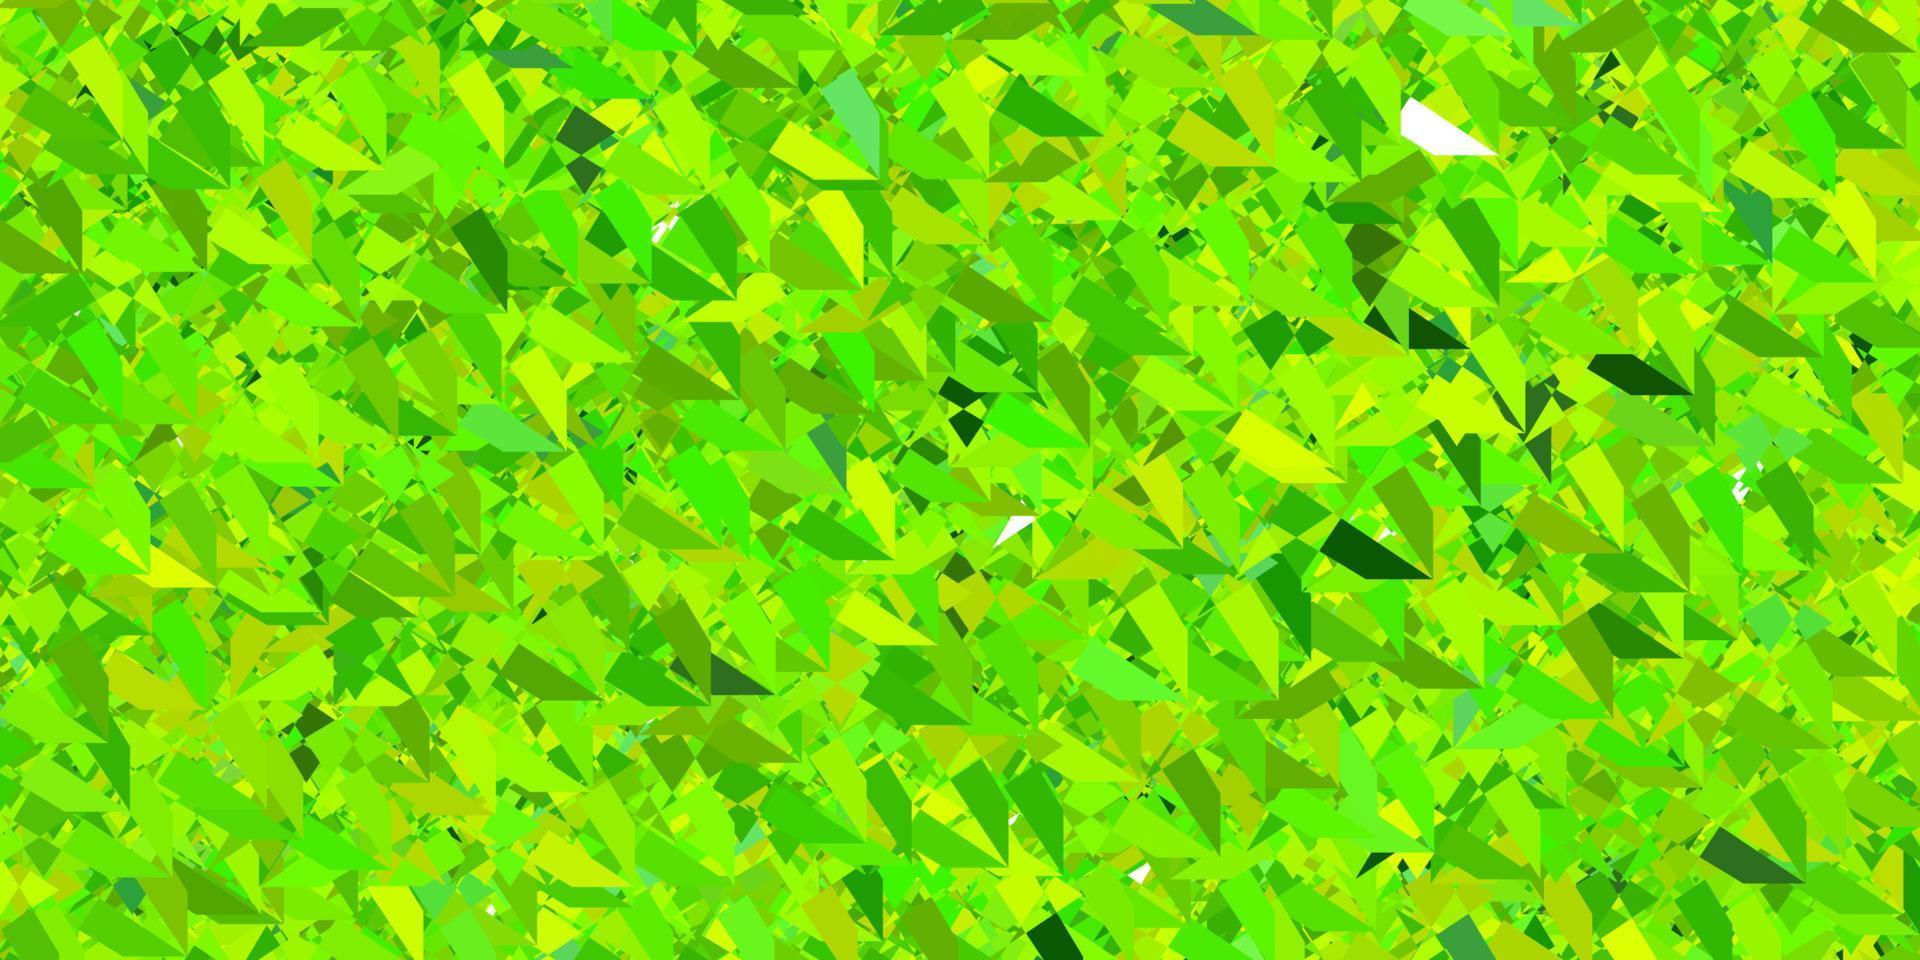 donkergroene, gele vectorachtergrond met veelhoekige vormen. vector